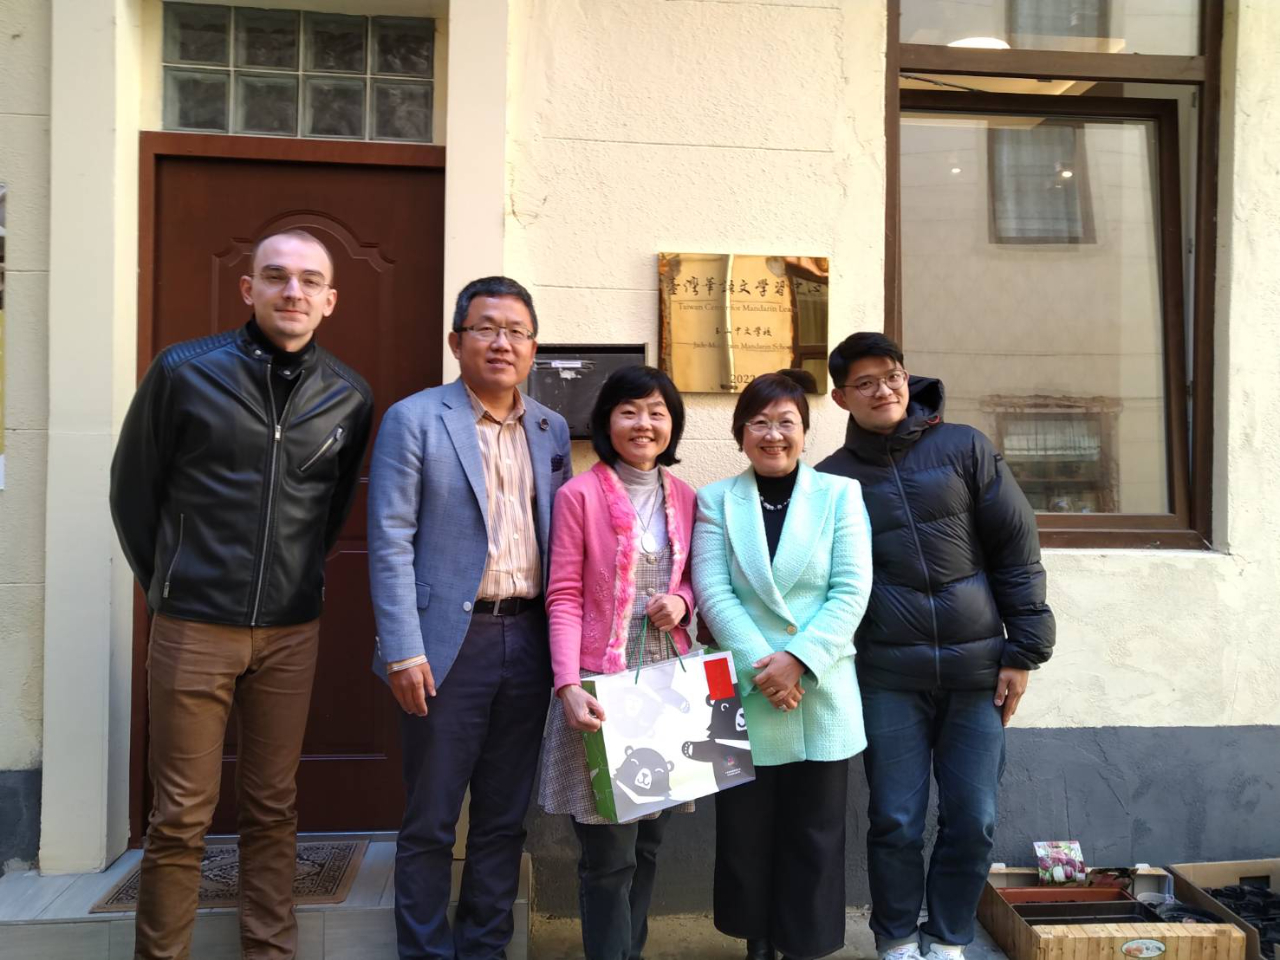 Liu, Shih-chung nagykövet és HSU Chia-ching, miniszterhelyettes a Tajvani Tengerentúli Közösségi Ügyek Tanácsának tagja  örömmel látogattak el április 17-én a Tajvani Mandarin Nyelvtanulási Központba, ahol Li Yiying igazgató és a központ mandarin tanárai fogadták őket.